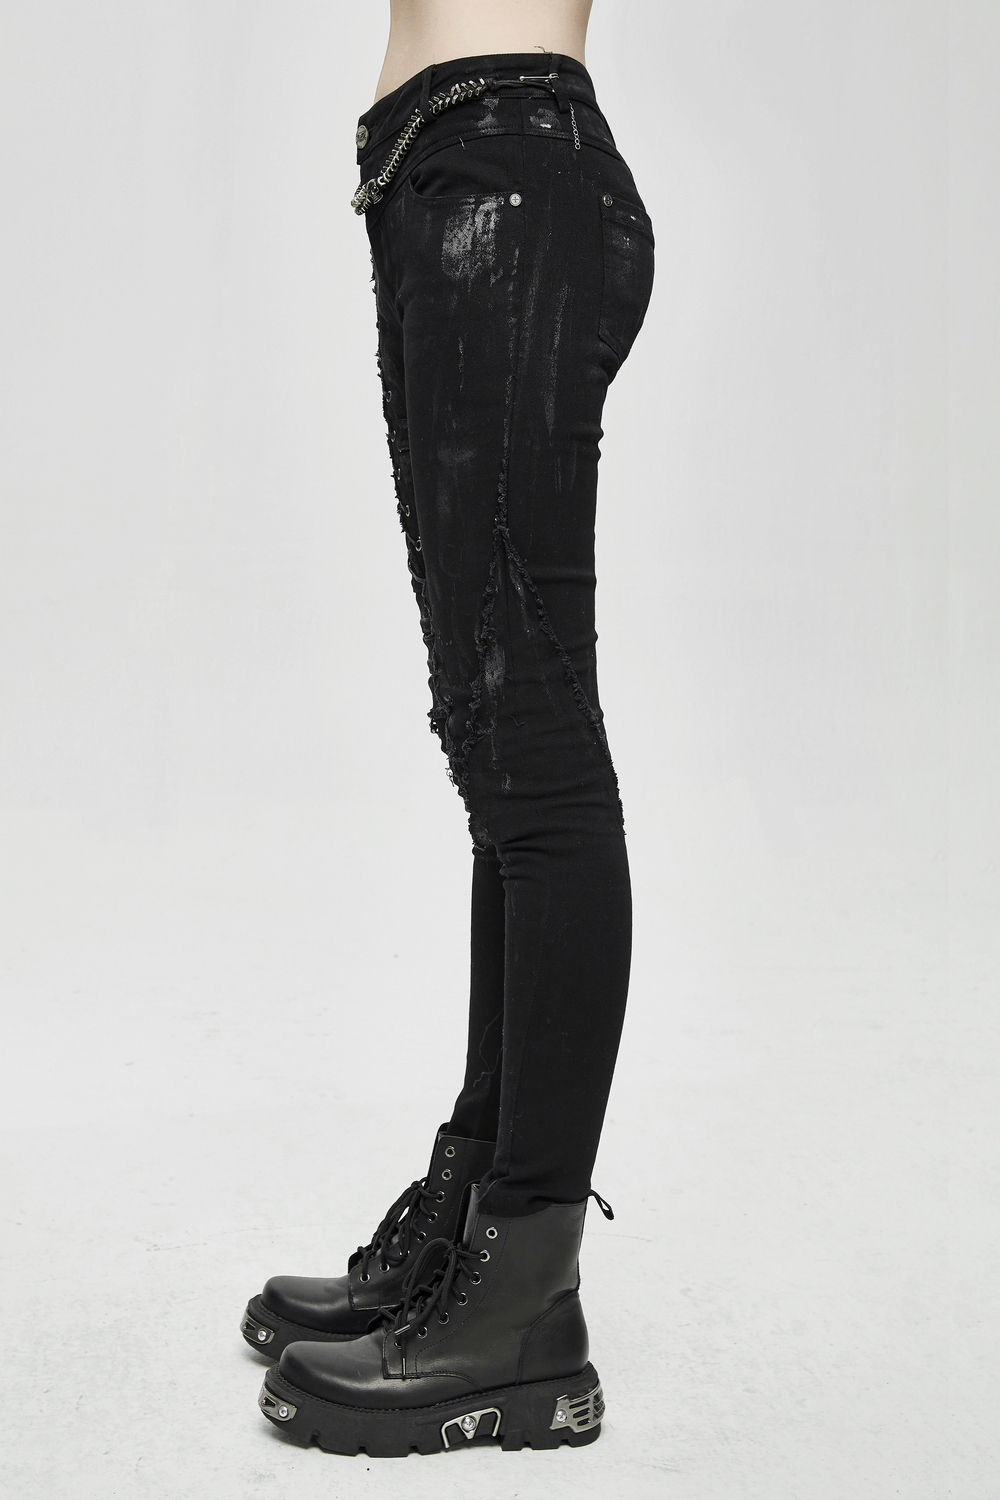 Unique Womens SteamPunk Mottled Jeans Streetwear / Skinny Black Denim Trousers - HARD'N'HEAVY